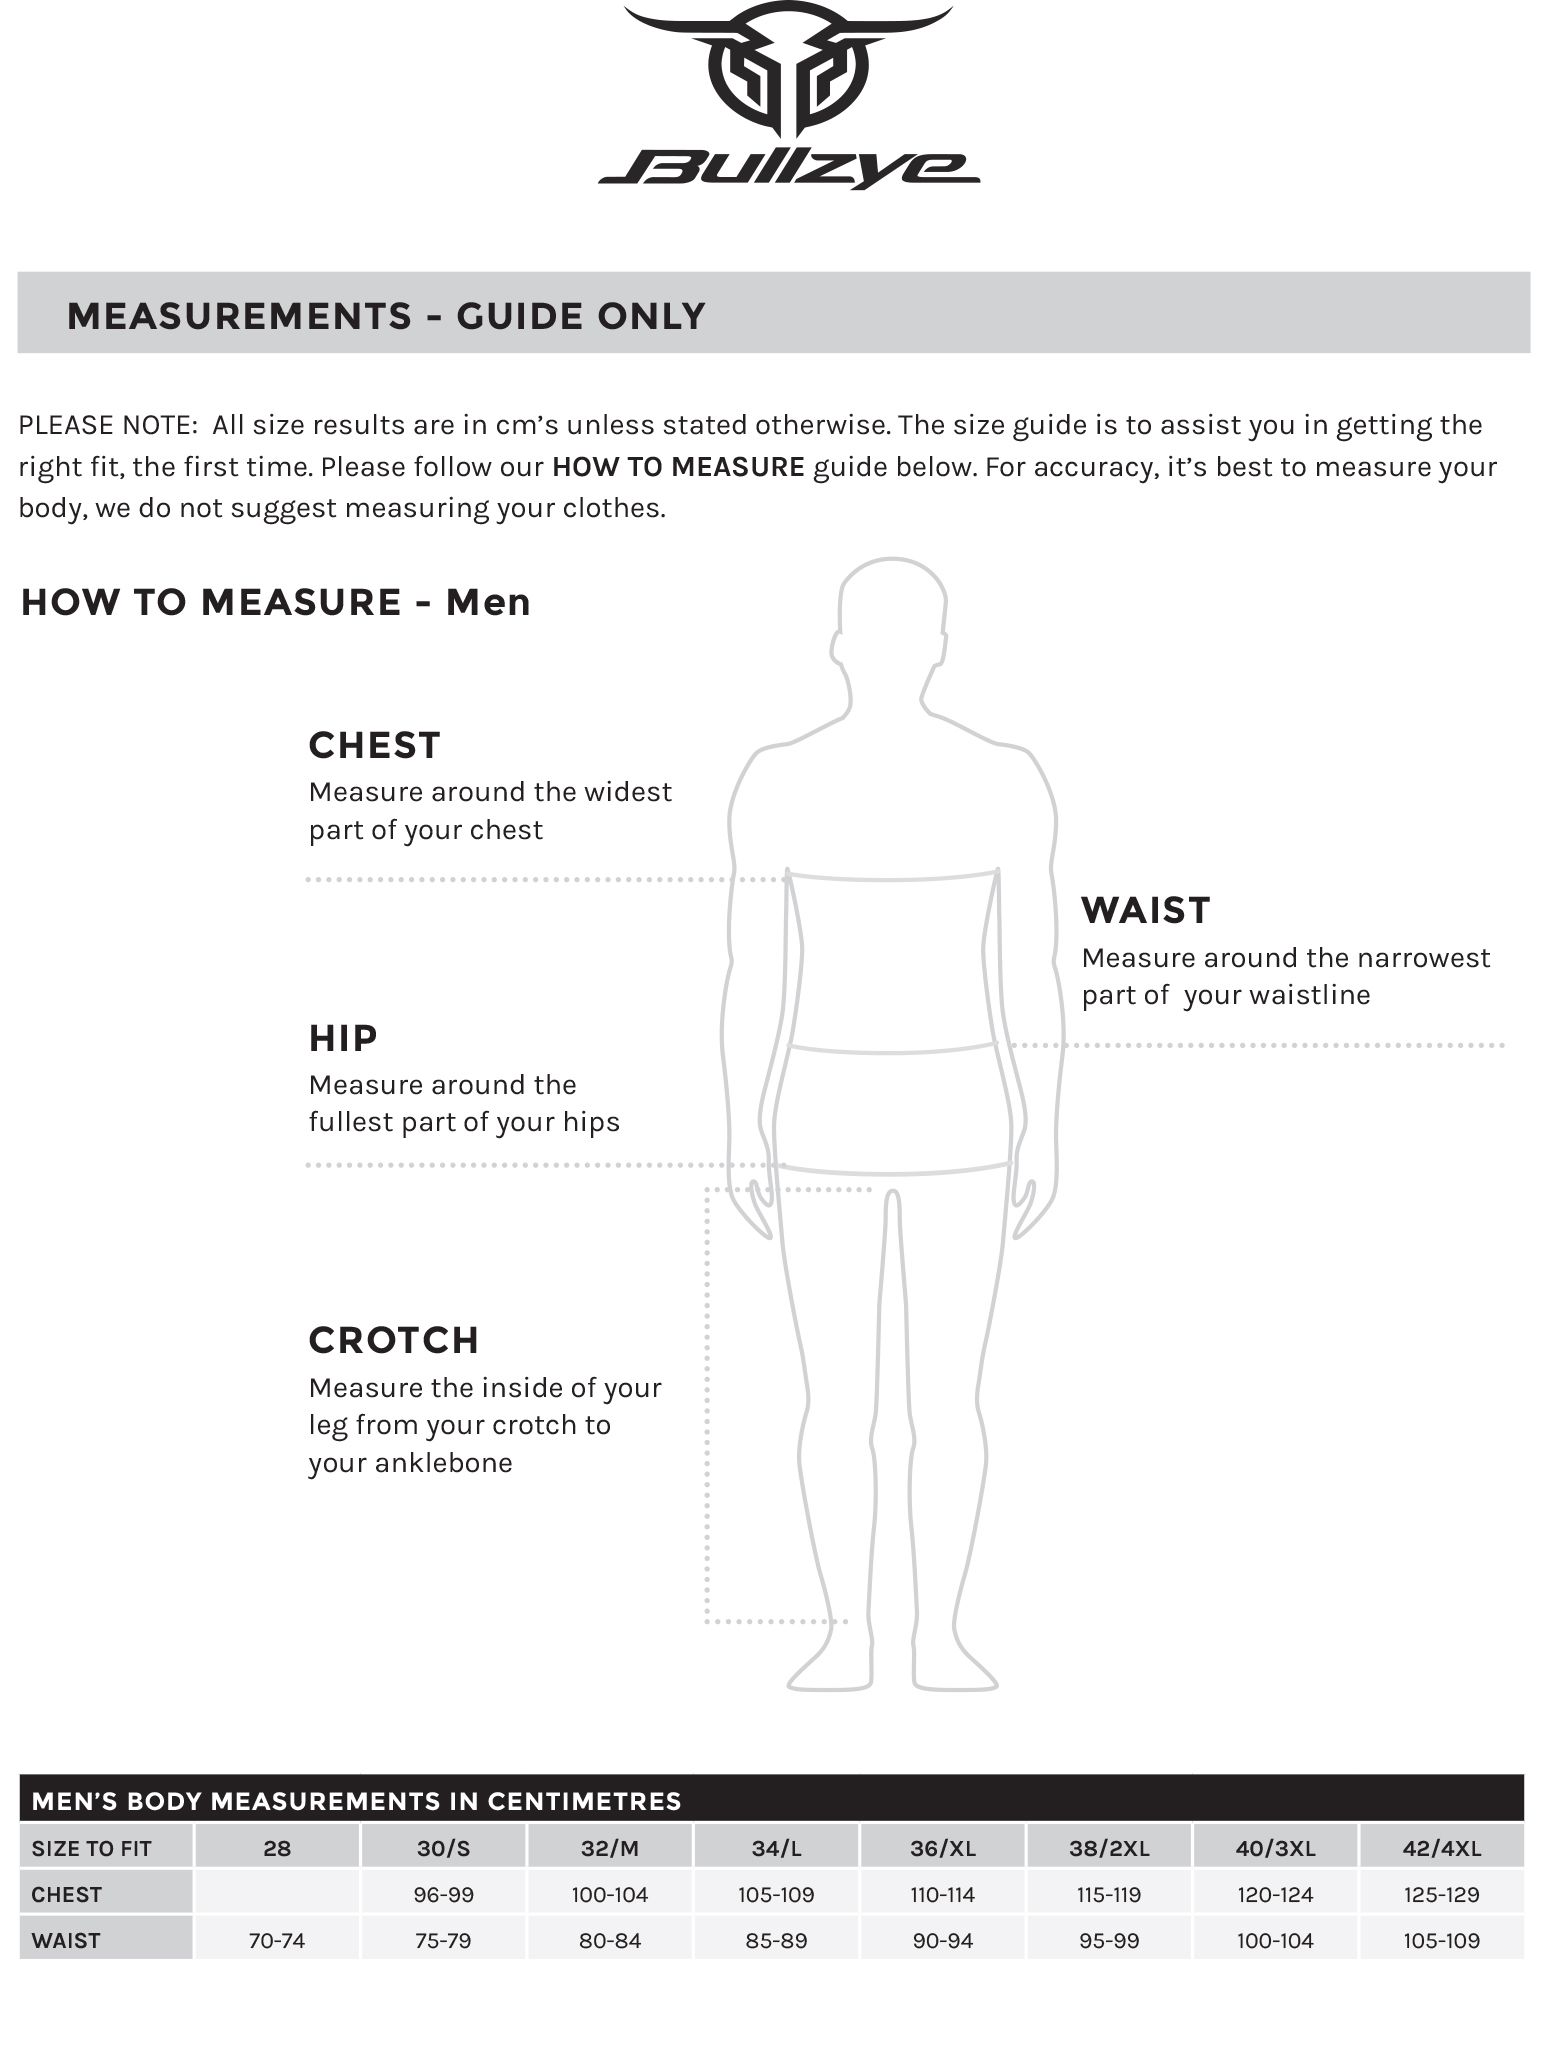 Bullzye Men's Size Guide.jpg